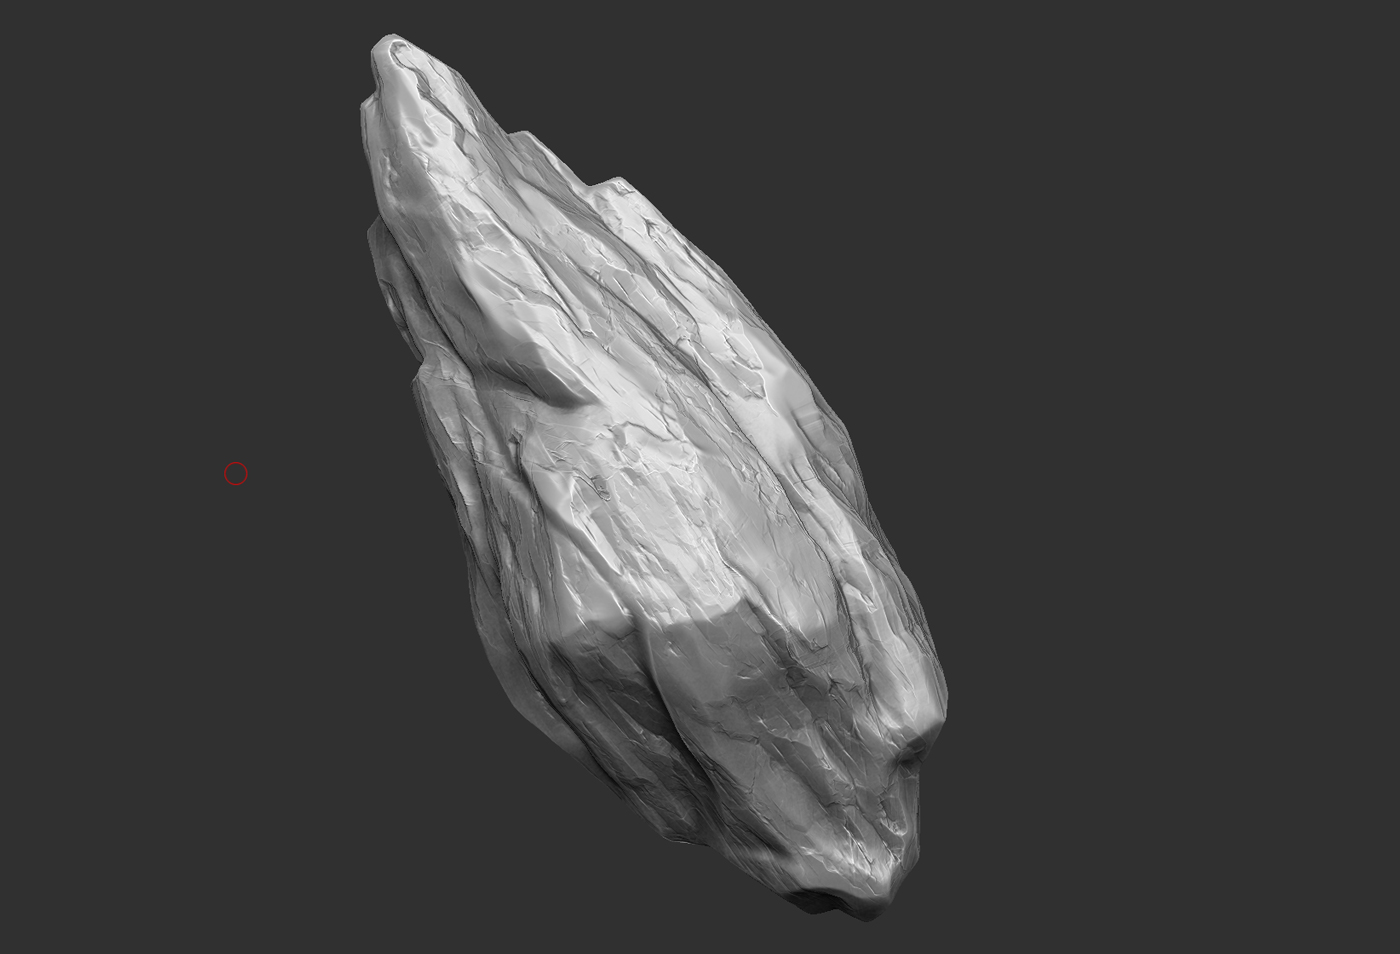 3D model of a rock